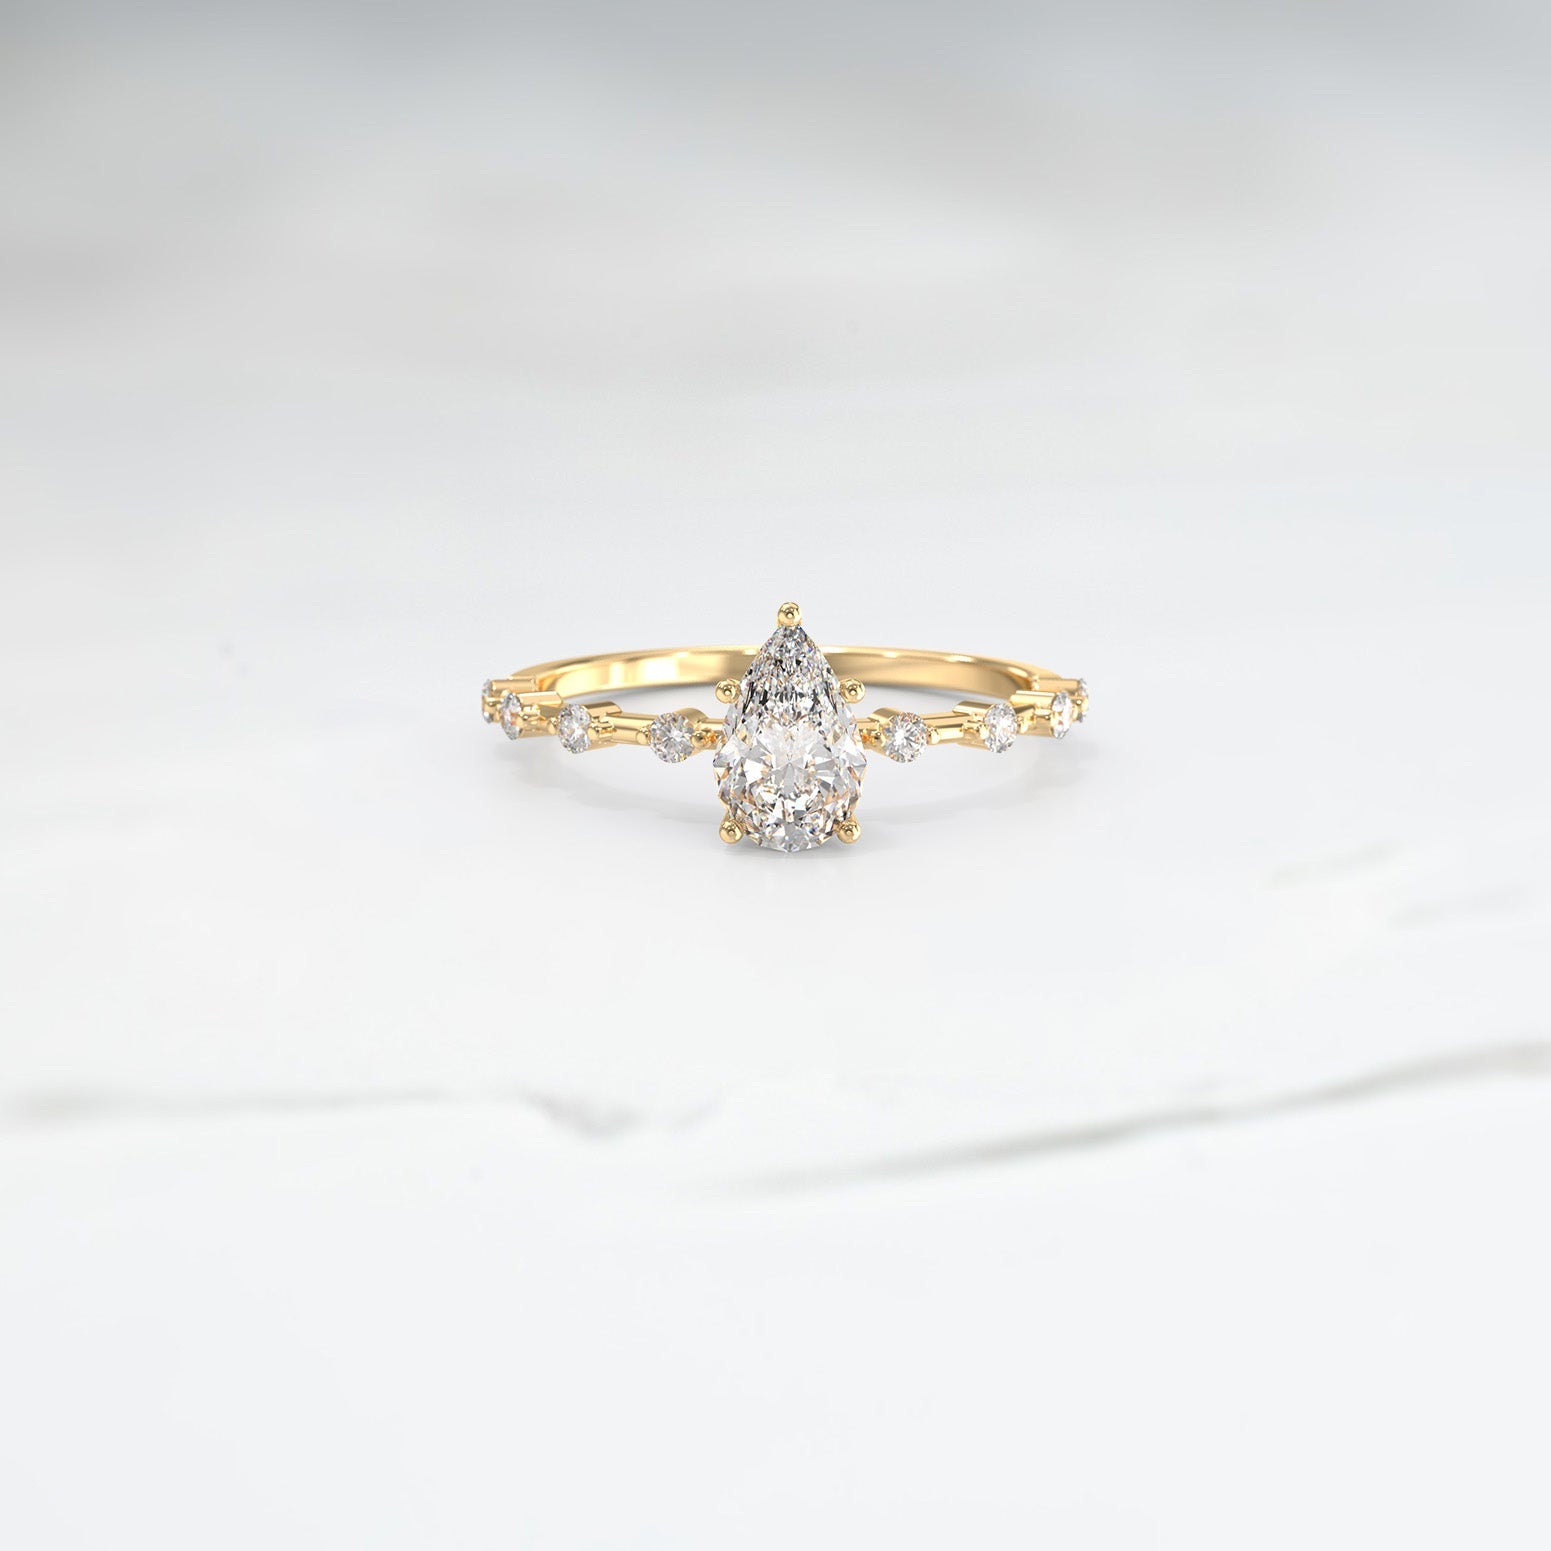 Customisable Ice Setting - Lelya - bespoke engagement and wedding rings made in Scotland, UK